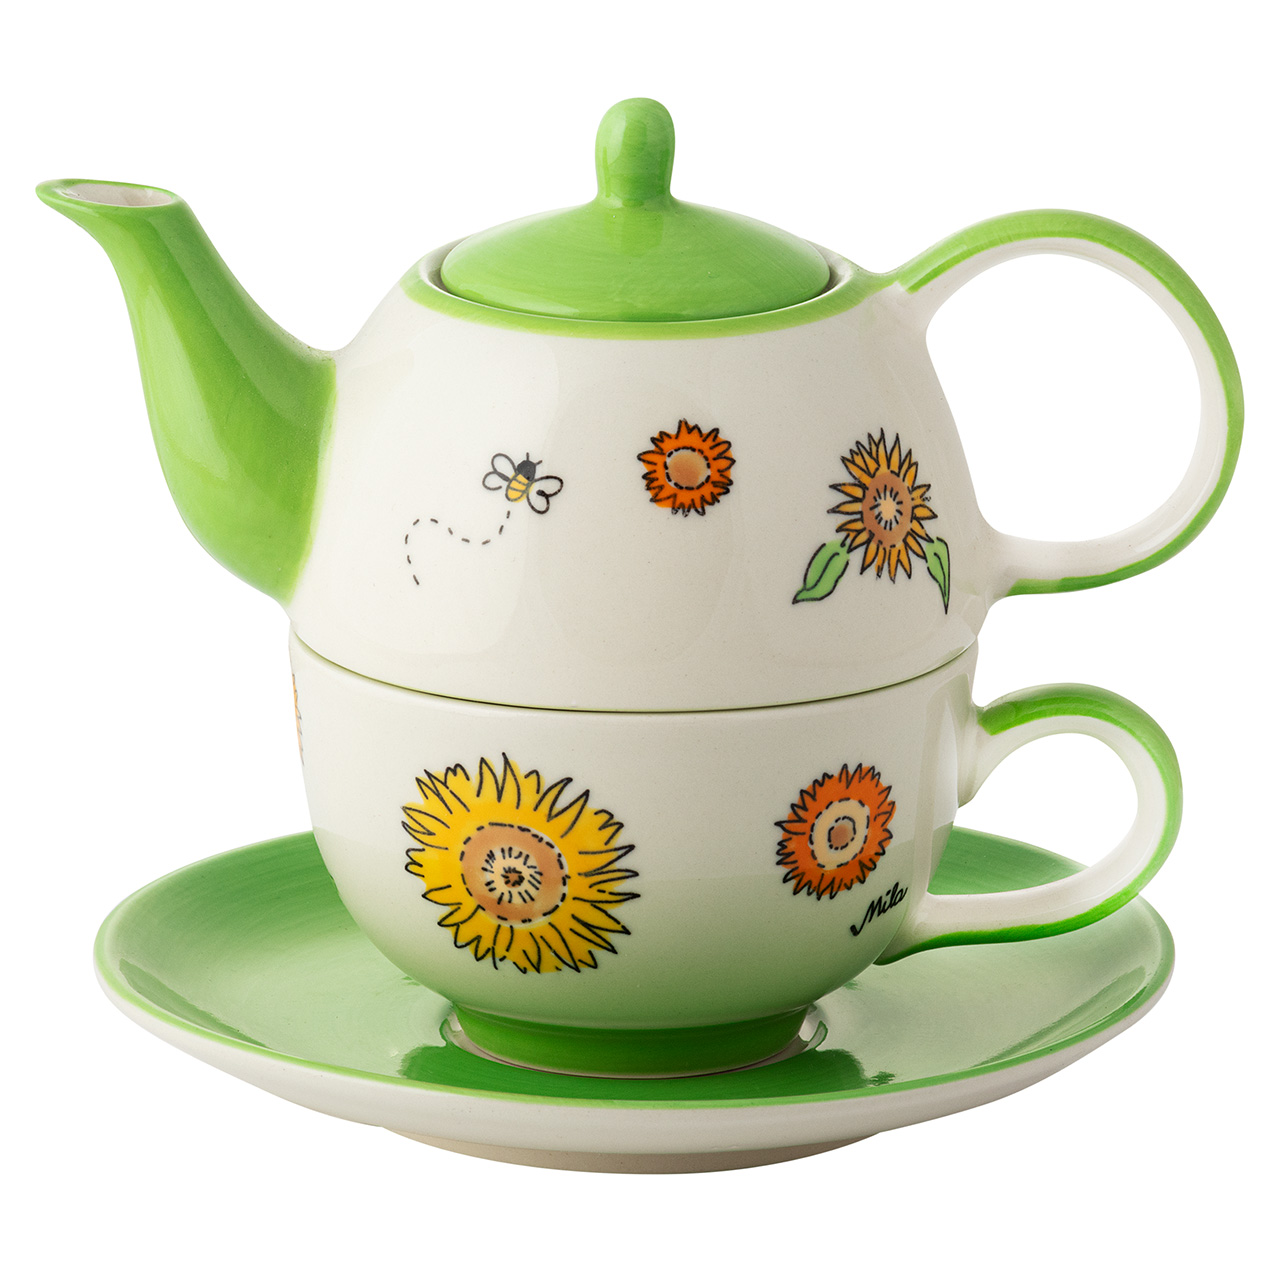 Tea for one - Sunny Sunflowers